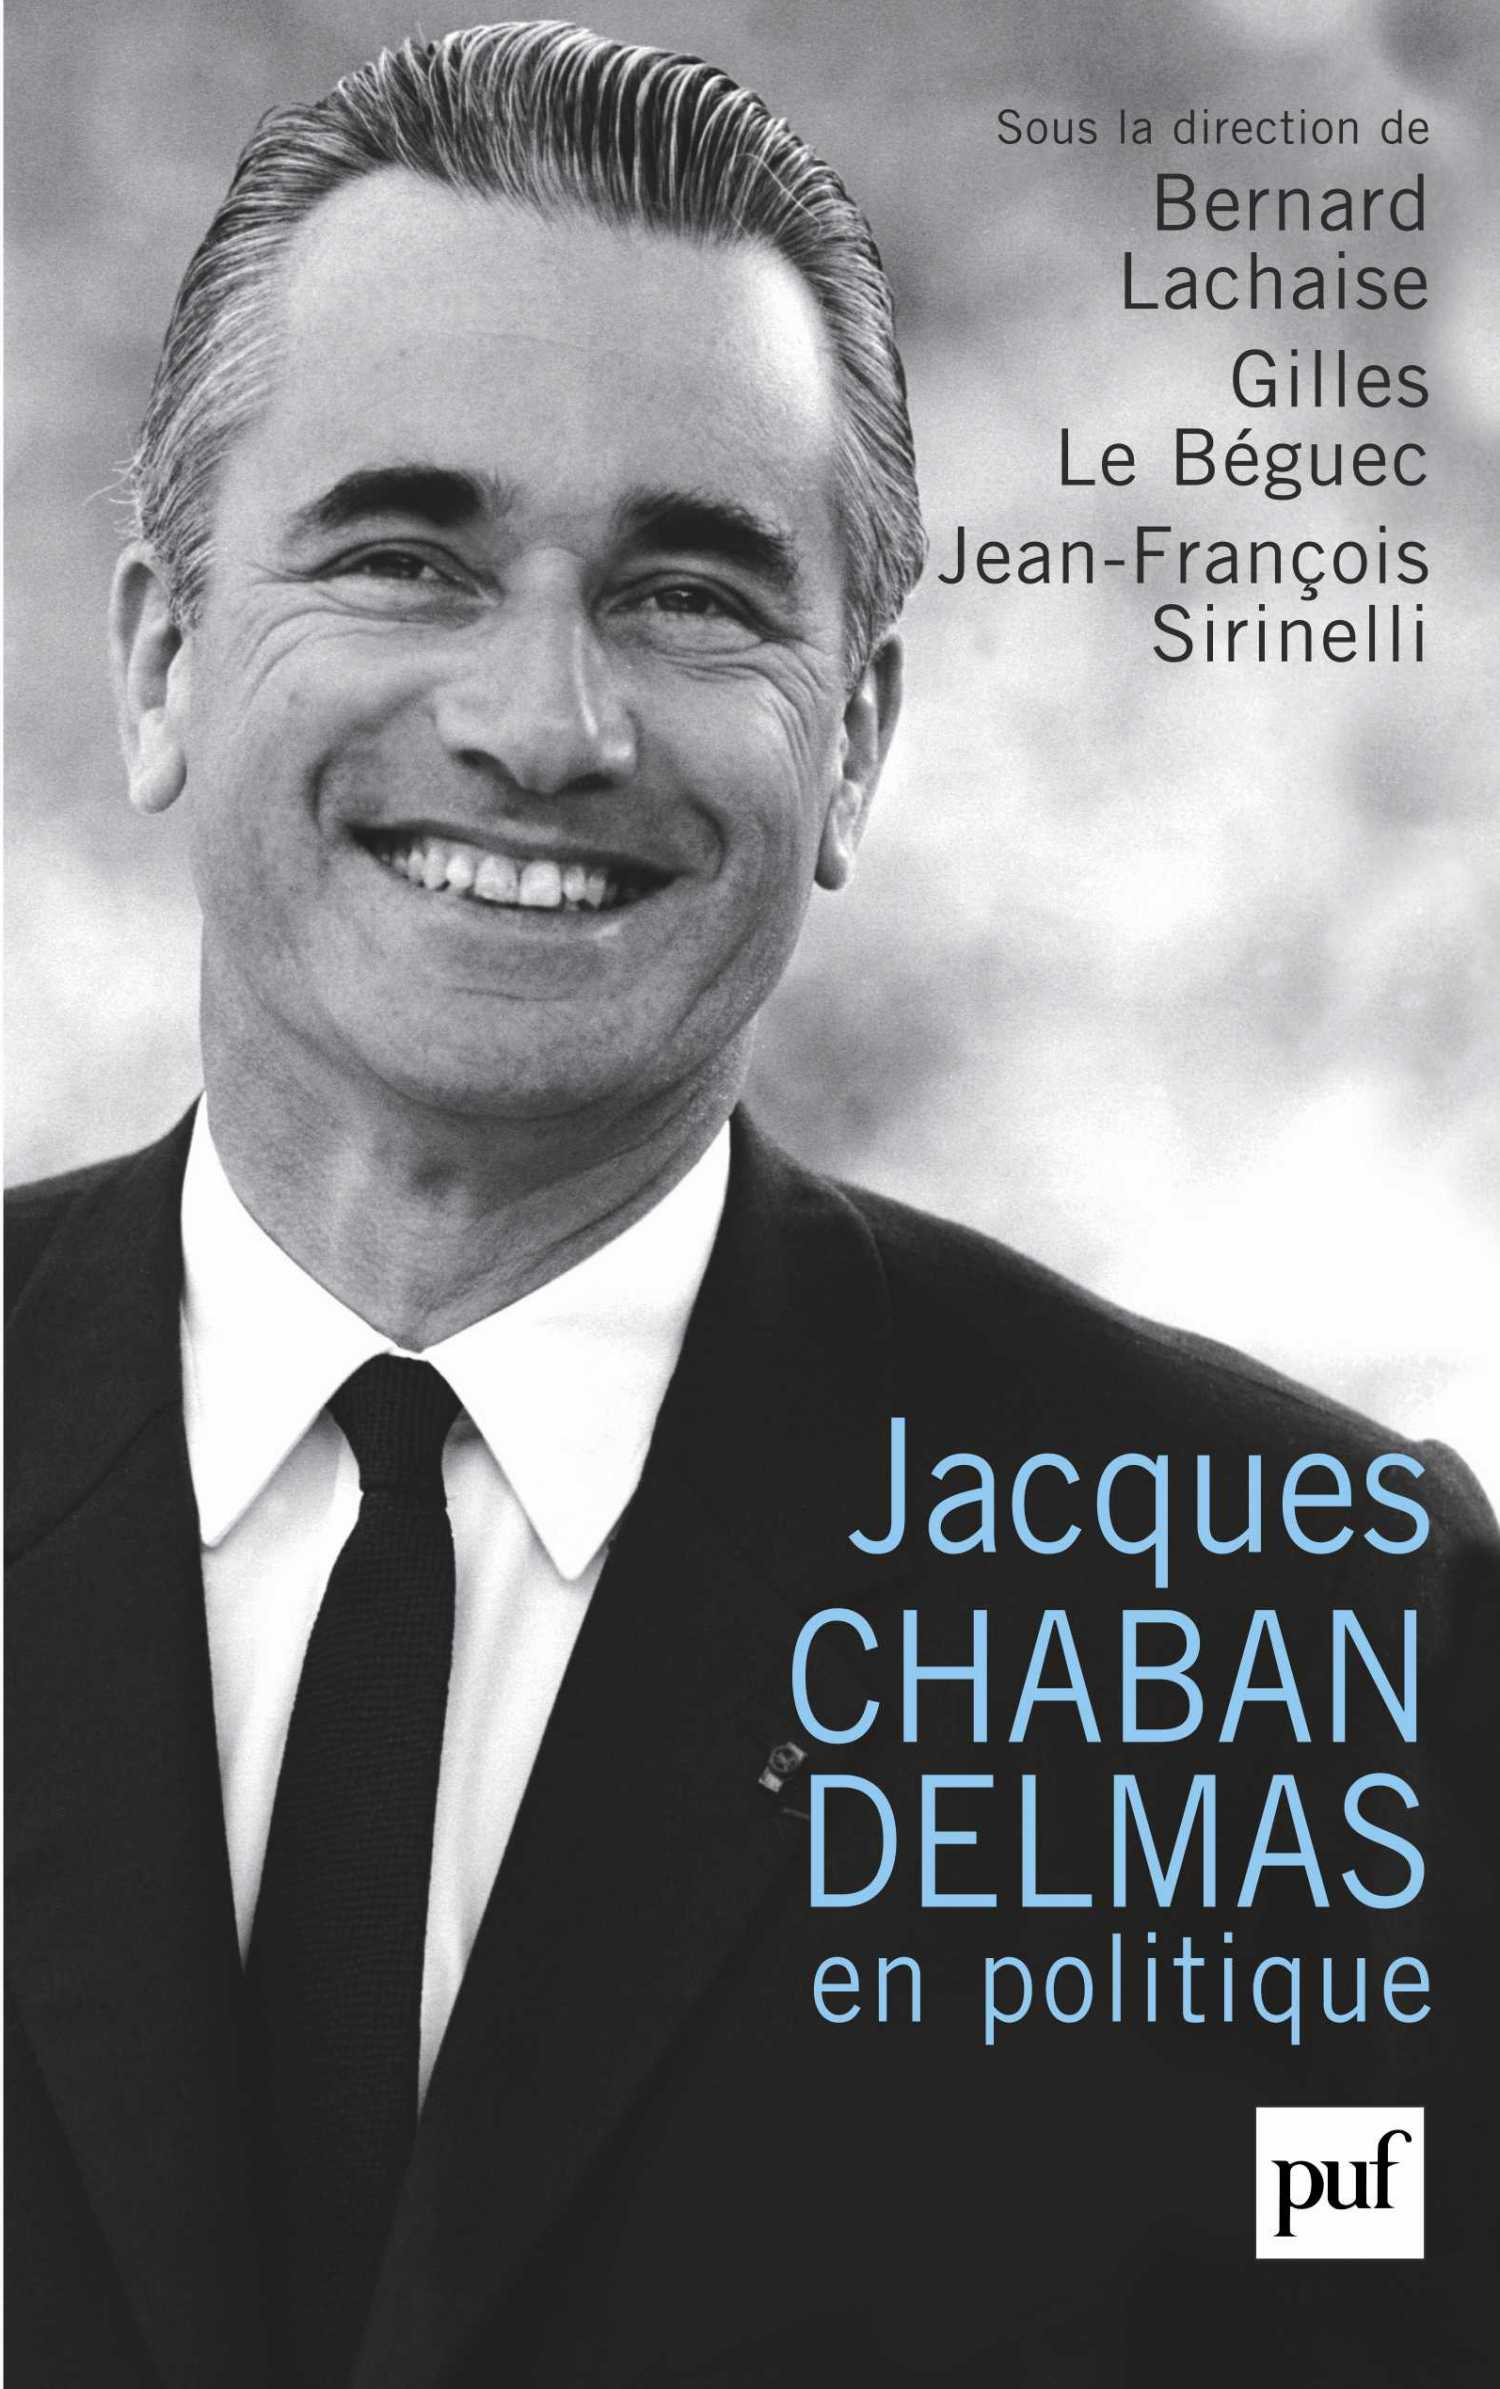 Jacques Chaban-Delmas en politique De Bernard Lachaise, Gilles le Béguec et Jean-François Sirinelli - Presses Universitaires de France